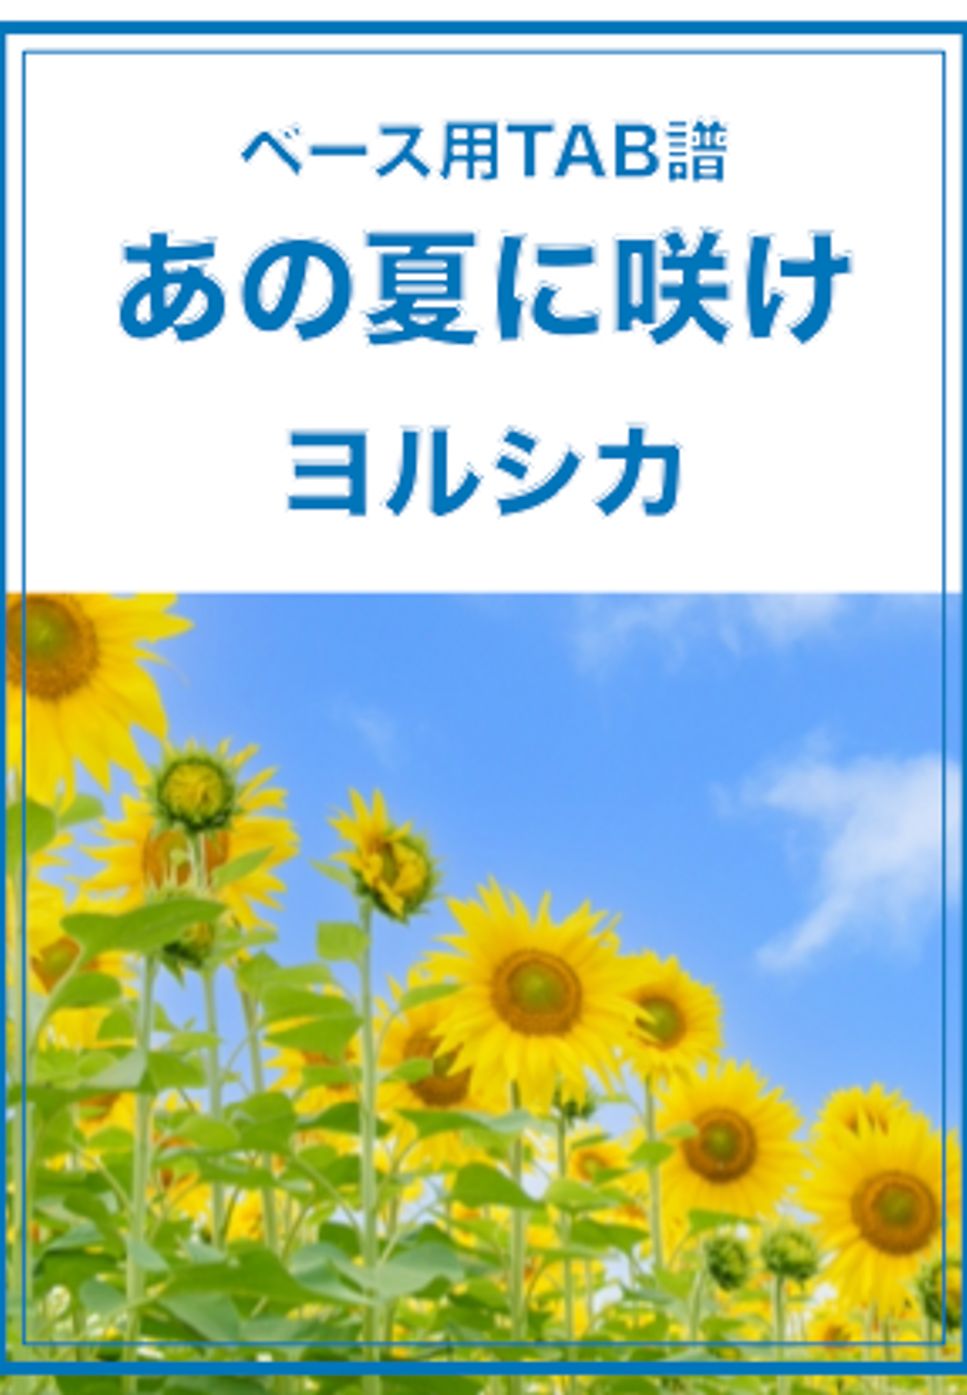 ヨルシカ - あの夏に咲け (ベースTAB譜) by ベースライン研究所タペ